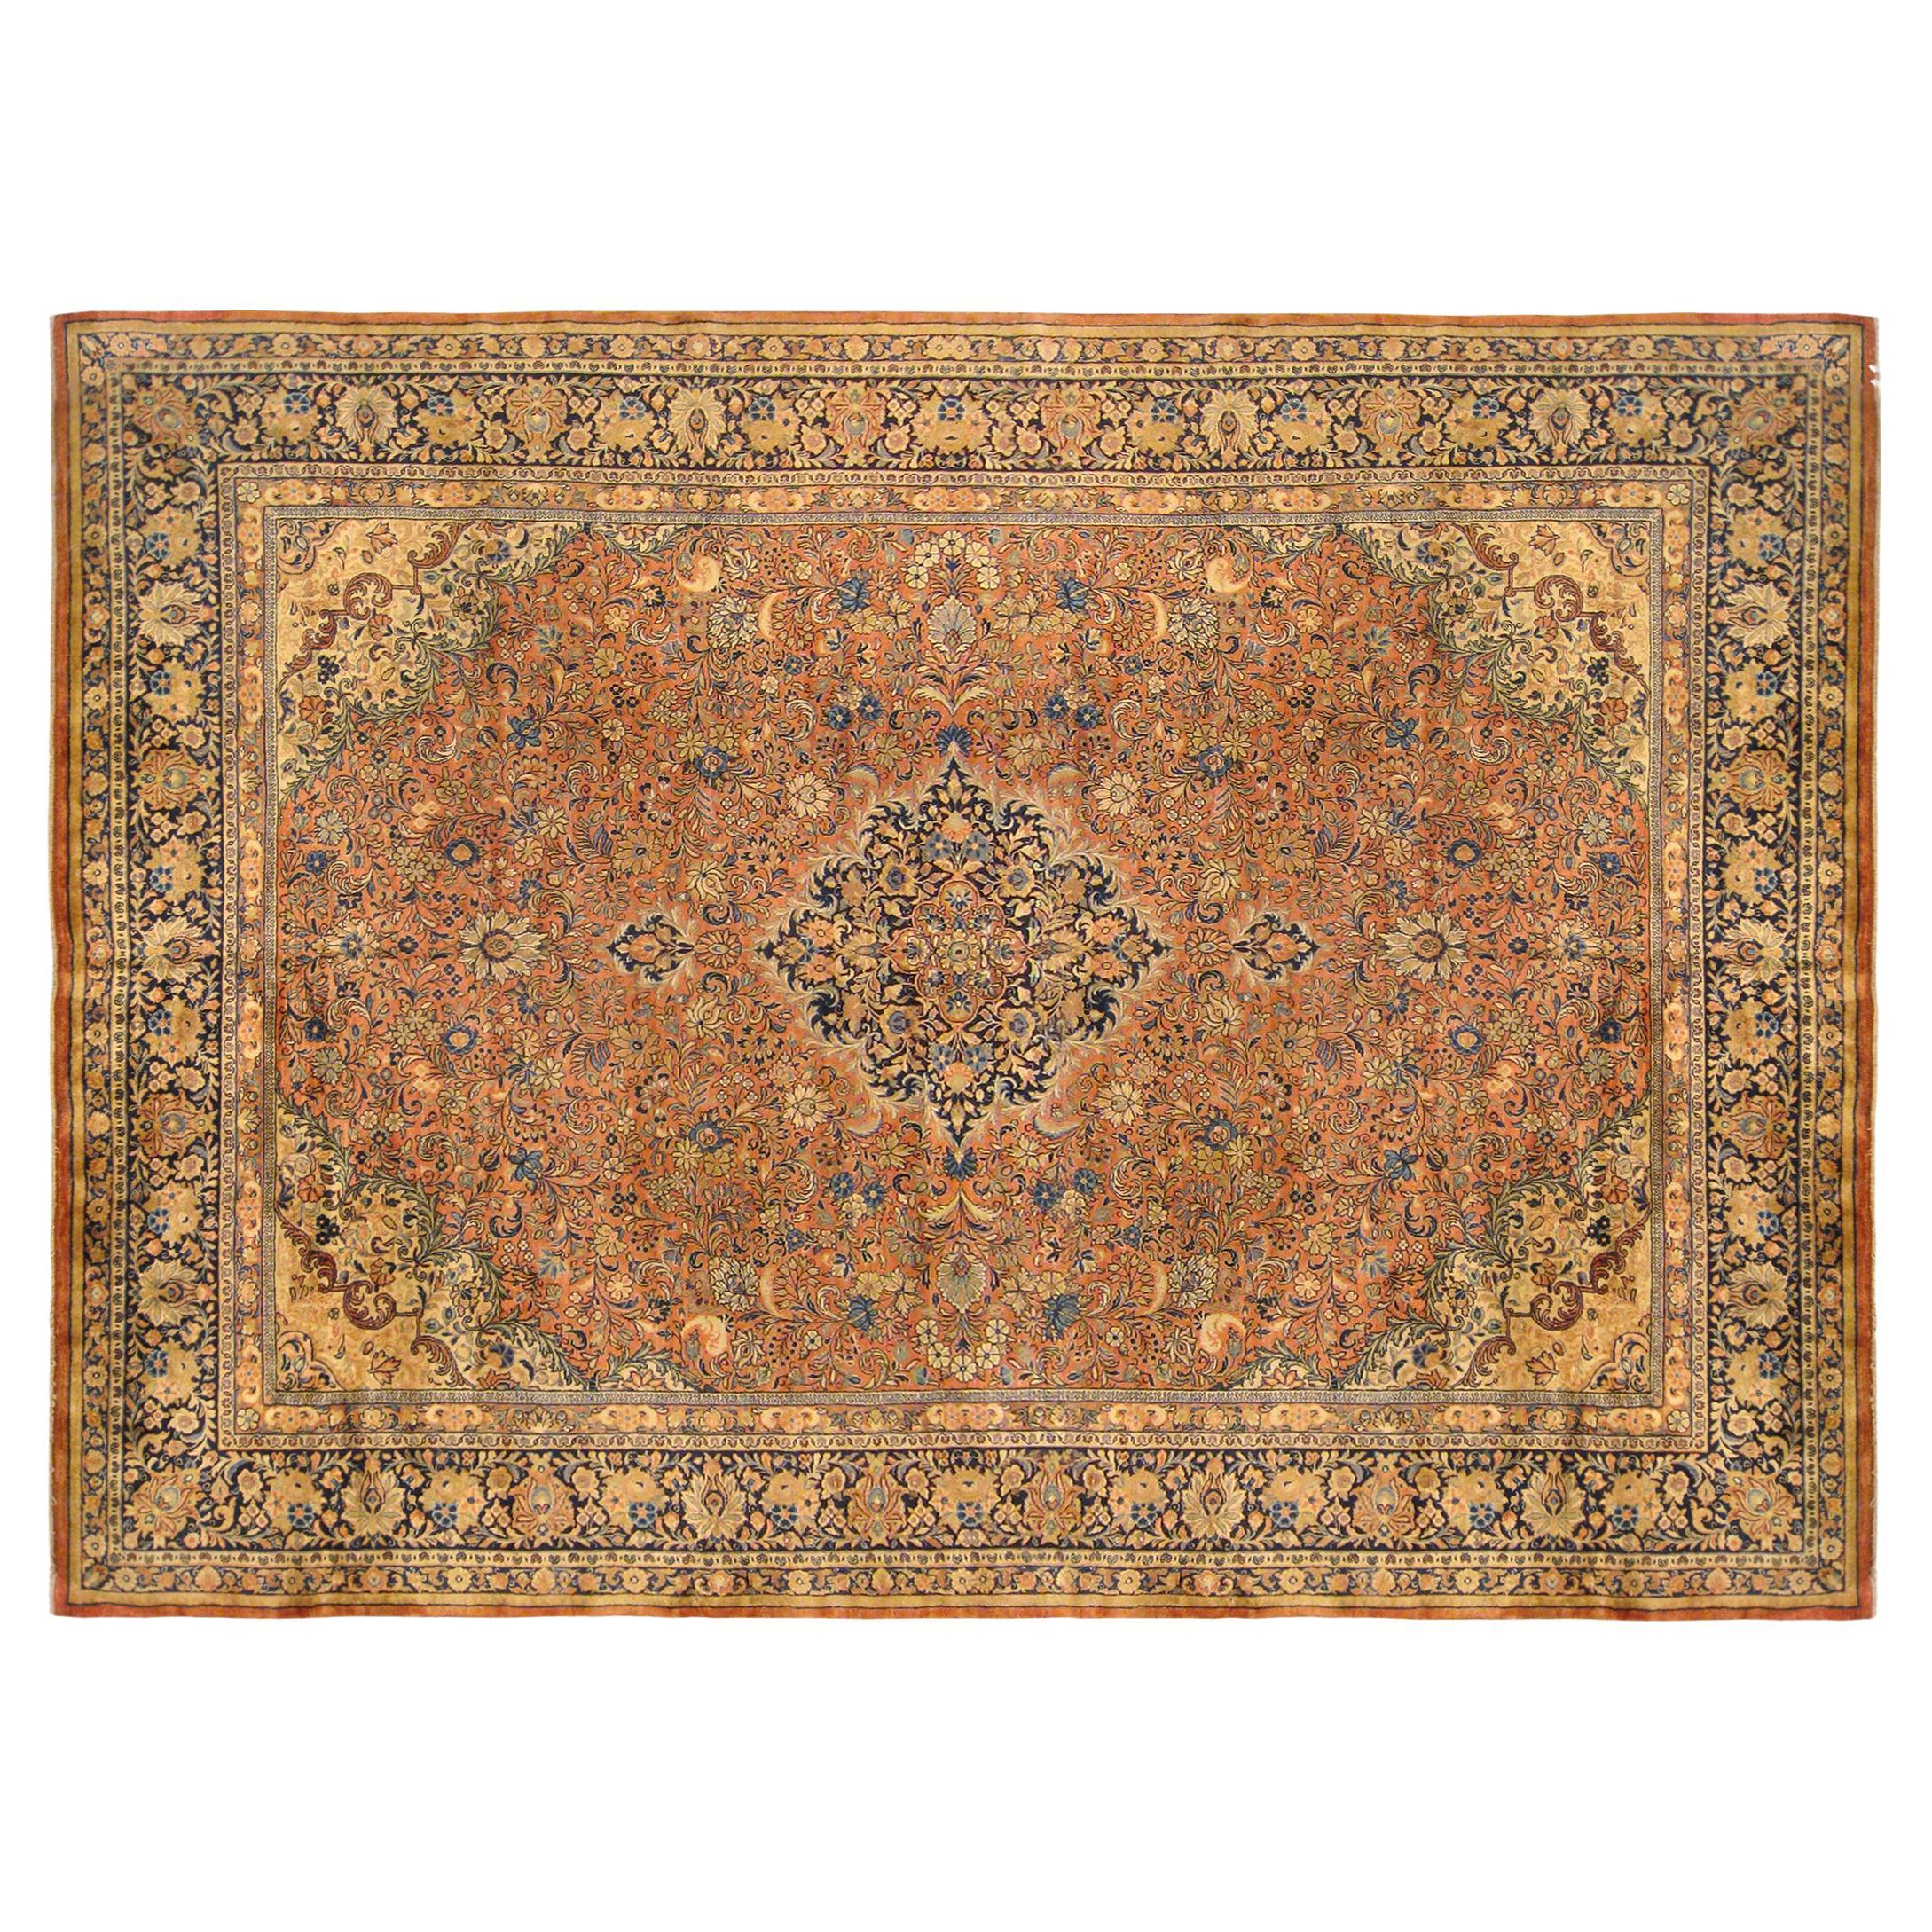 Antiker persischer Sarouk- orientalischer Teppich in Zimmergröße, mit zentralem Medaillon